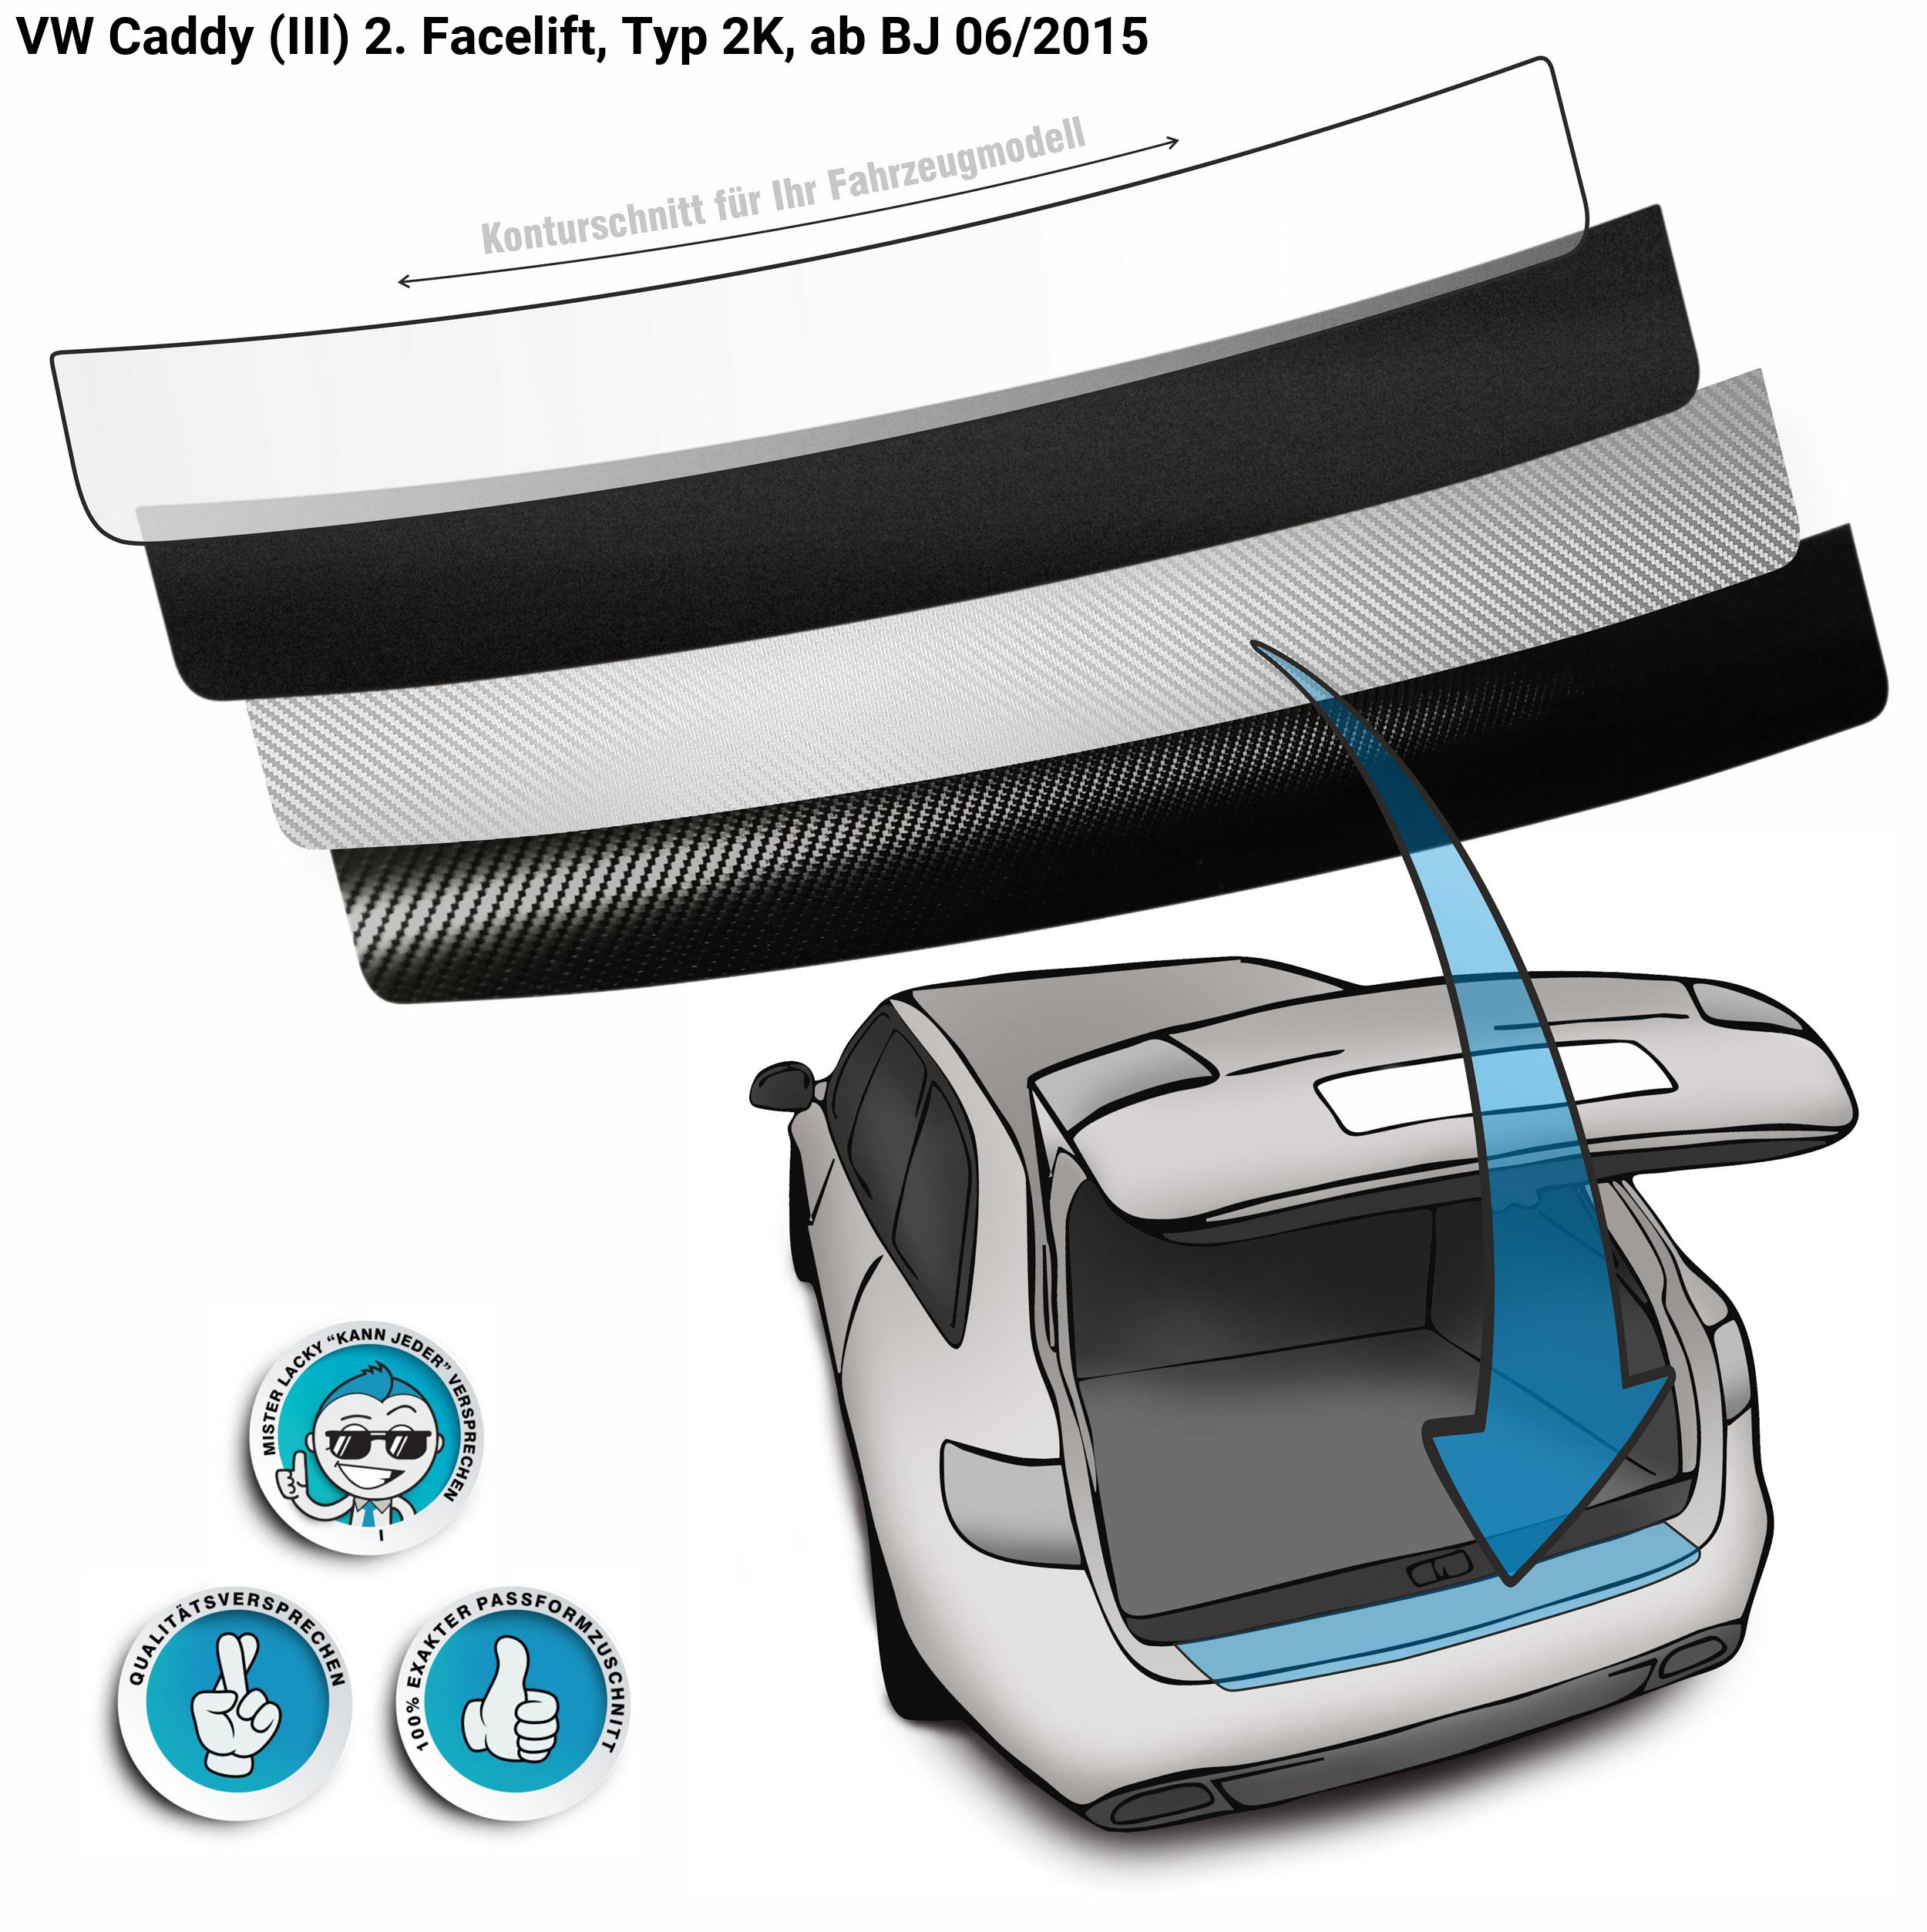 Ladekante & Einstiege passend für VW Caddy Lackschutzfolie SET Typ 2K